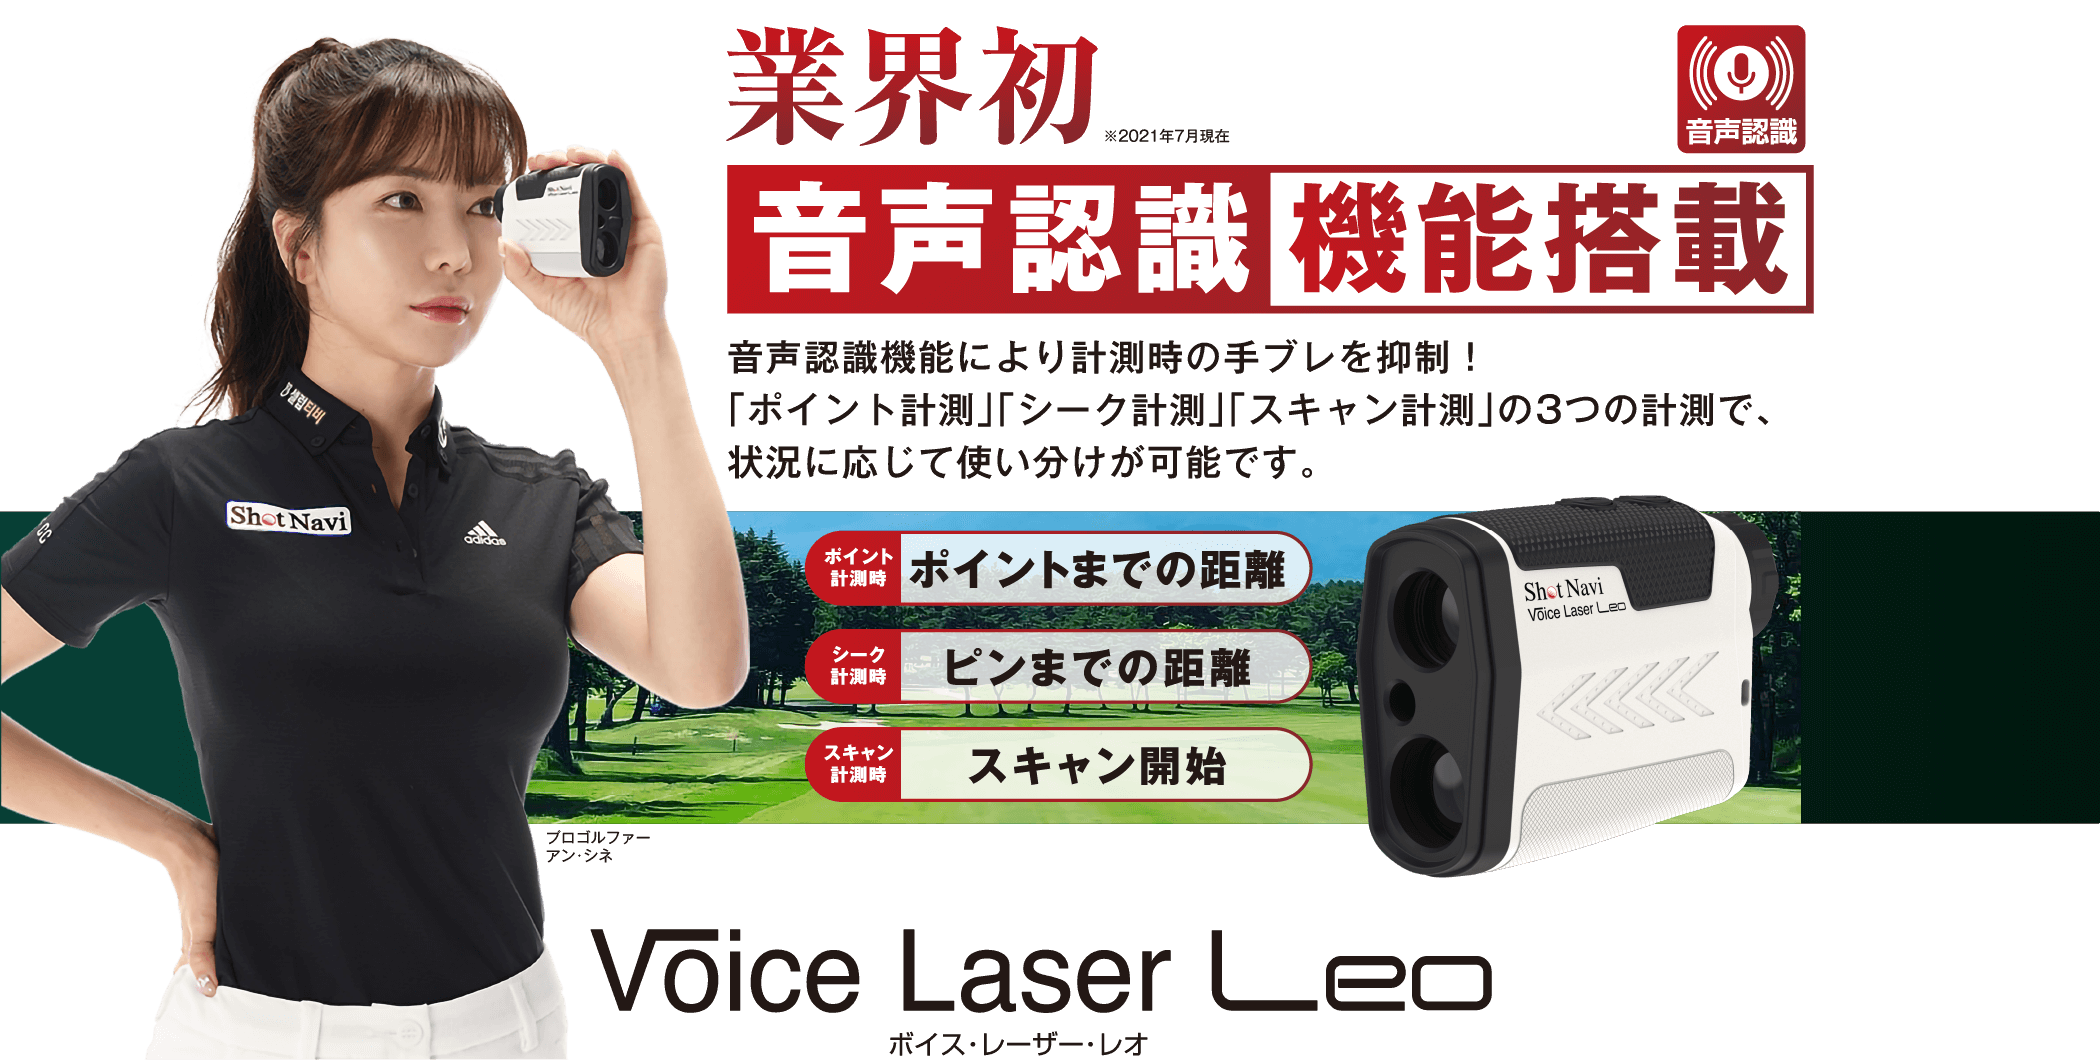 Voice Laser Leo : 音声操作機能搭載レーザー距離計測機